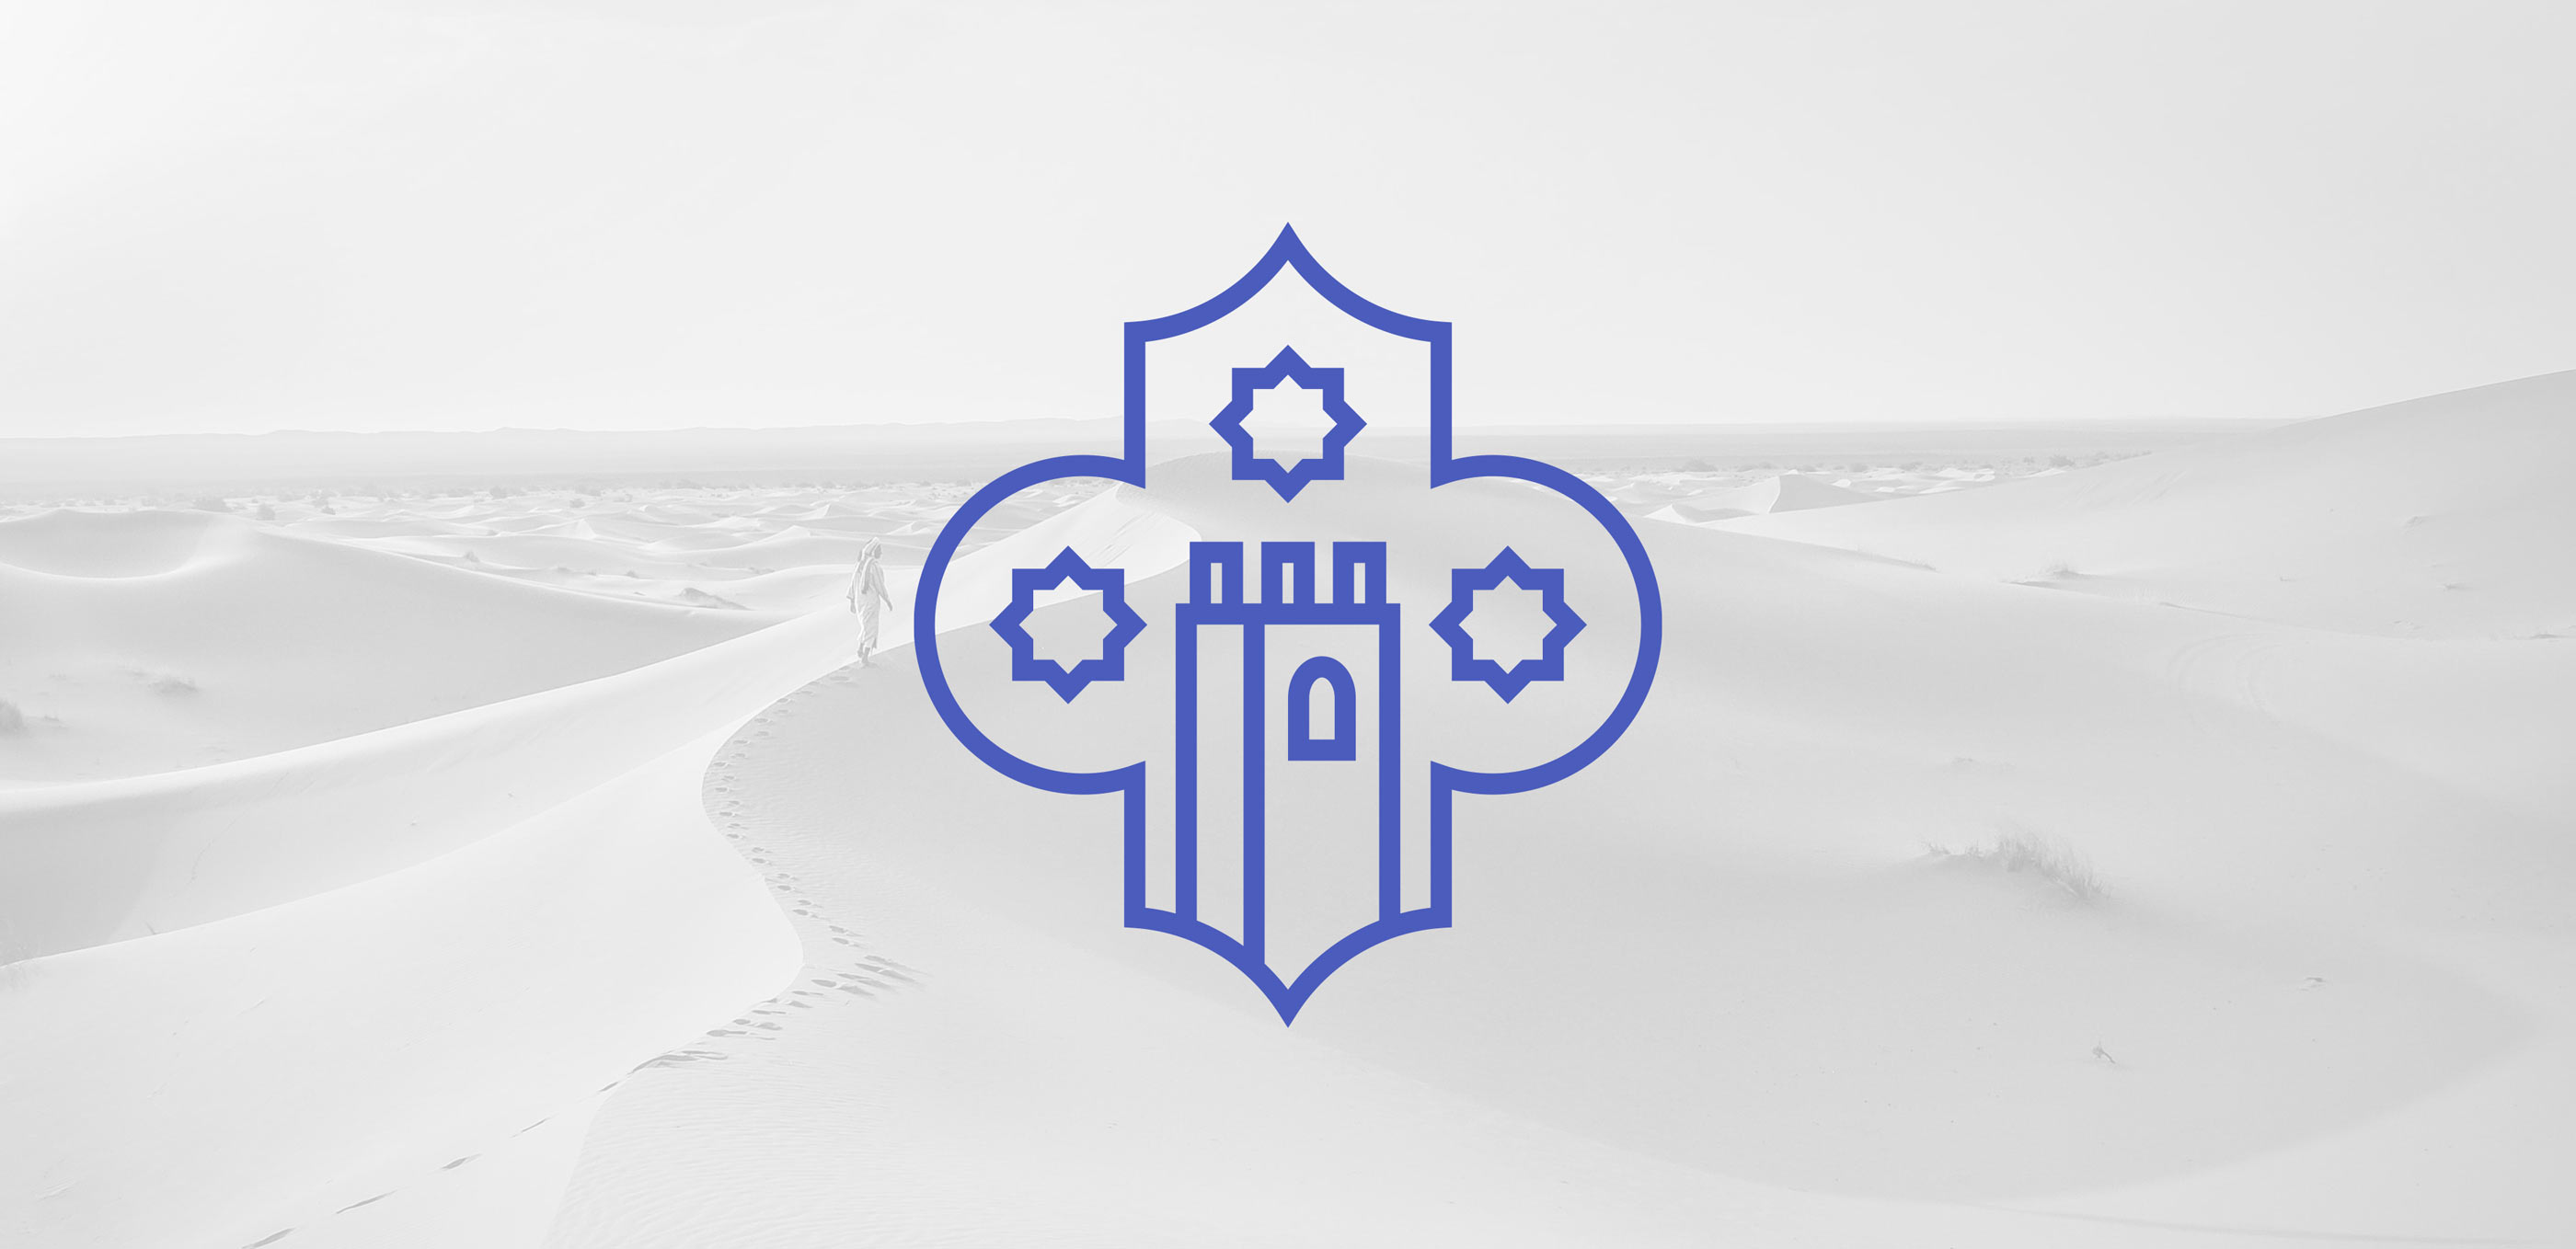 Meharee Morocco Tours Logo Mark Design Superimposed Over Desert Image by Karbon Branding